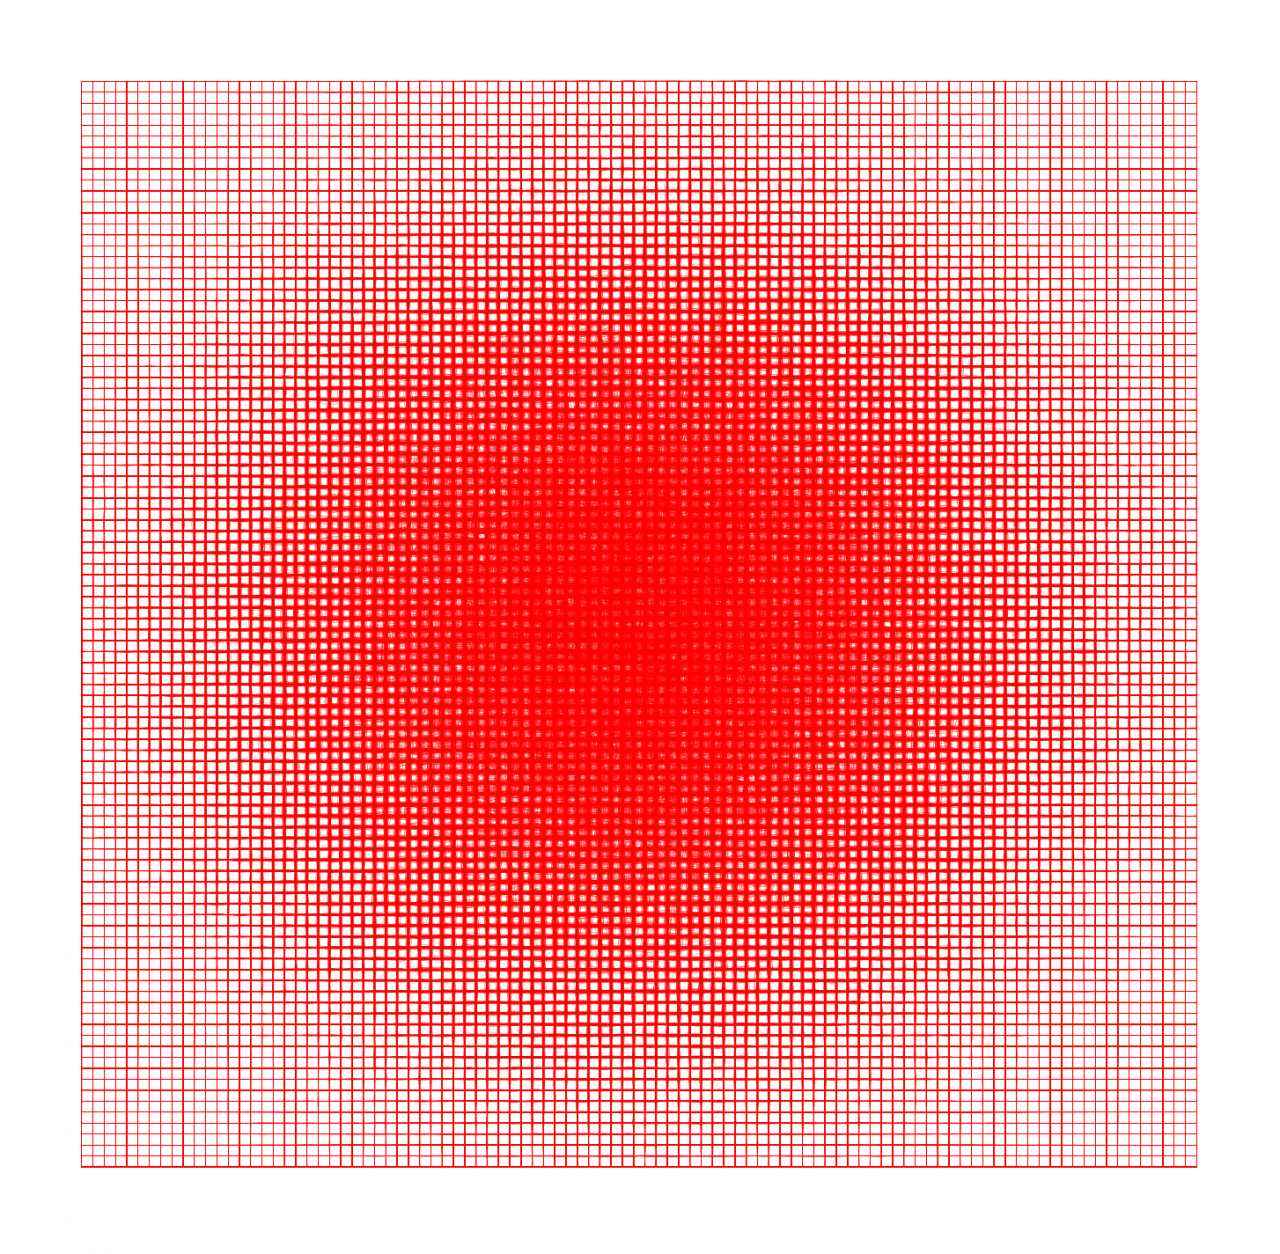 2D-Quadrat roter Gitterlinien, die sich zur Mitte hin in Form eines Kreises verdichten